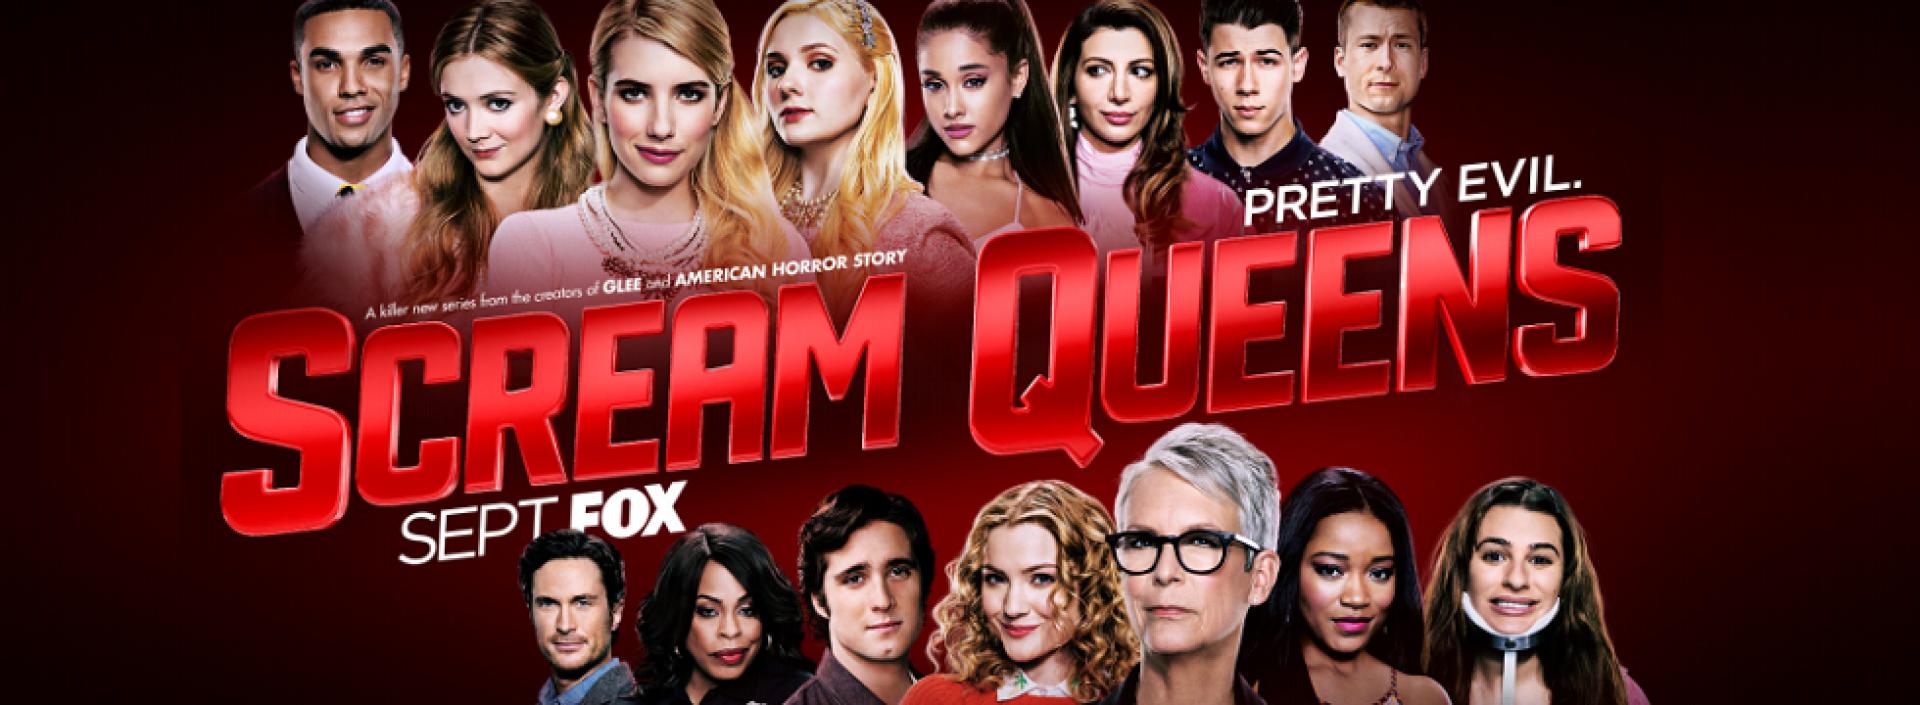 Scream Queens 1x01